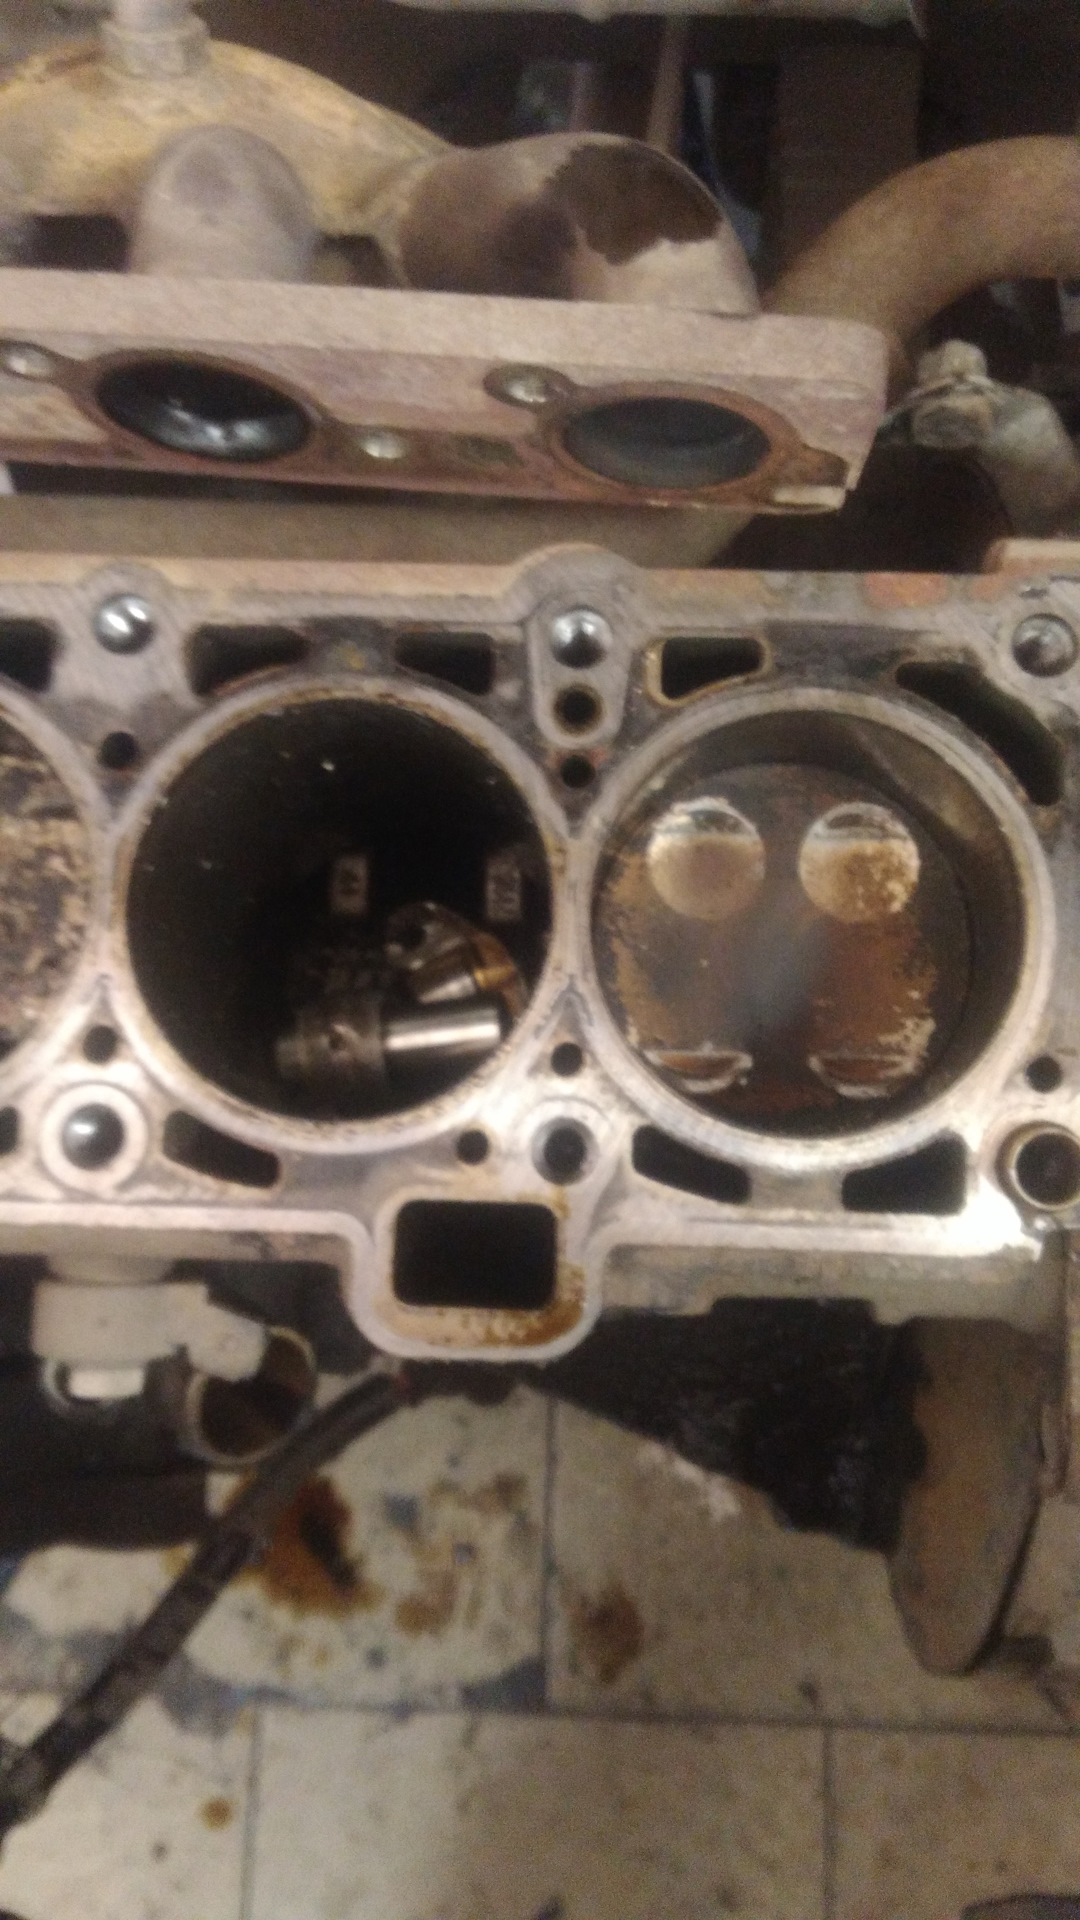 Какой двигатель гнет клапана гранта. Двигатель Гранта 8 клапанов 11186 гнет ли клапана. Погнуло клапана Гранта 8 клапанная. Загнуло клапана Приора 16 клапанов. Погнуло клапана Гранта 8 клап.